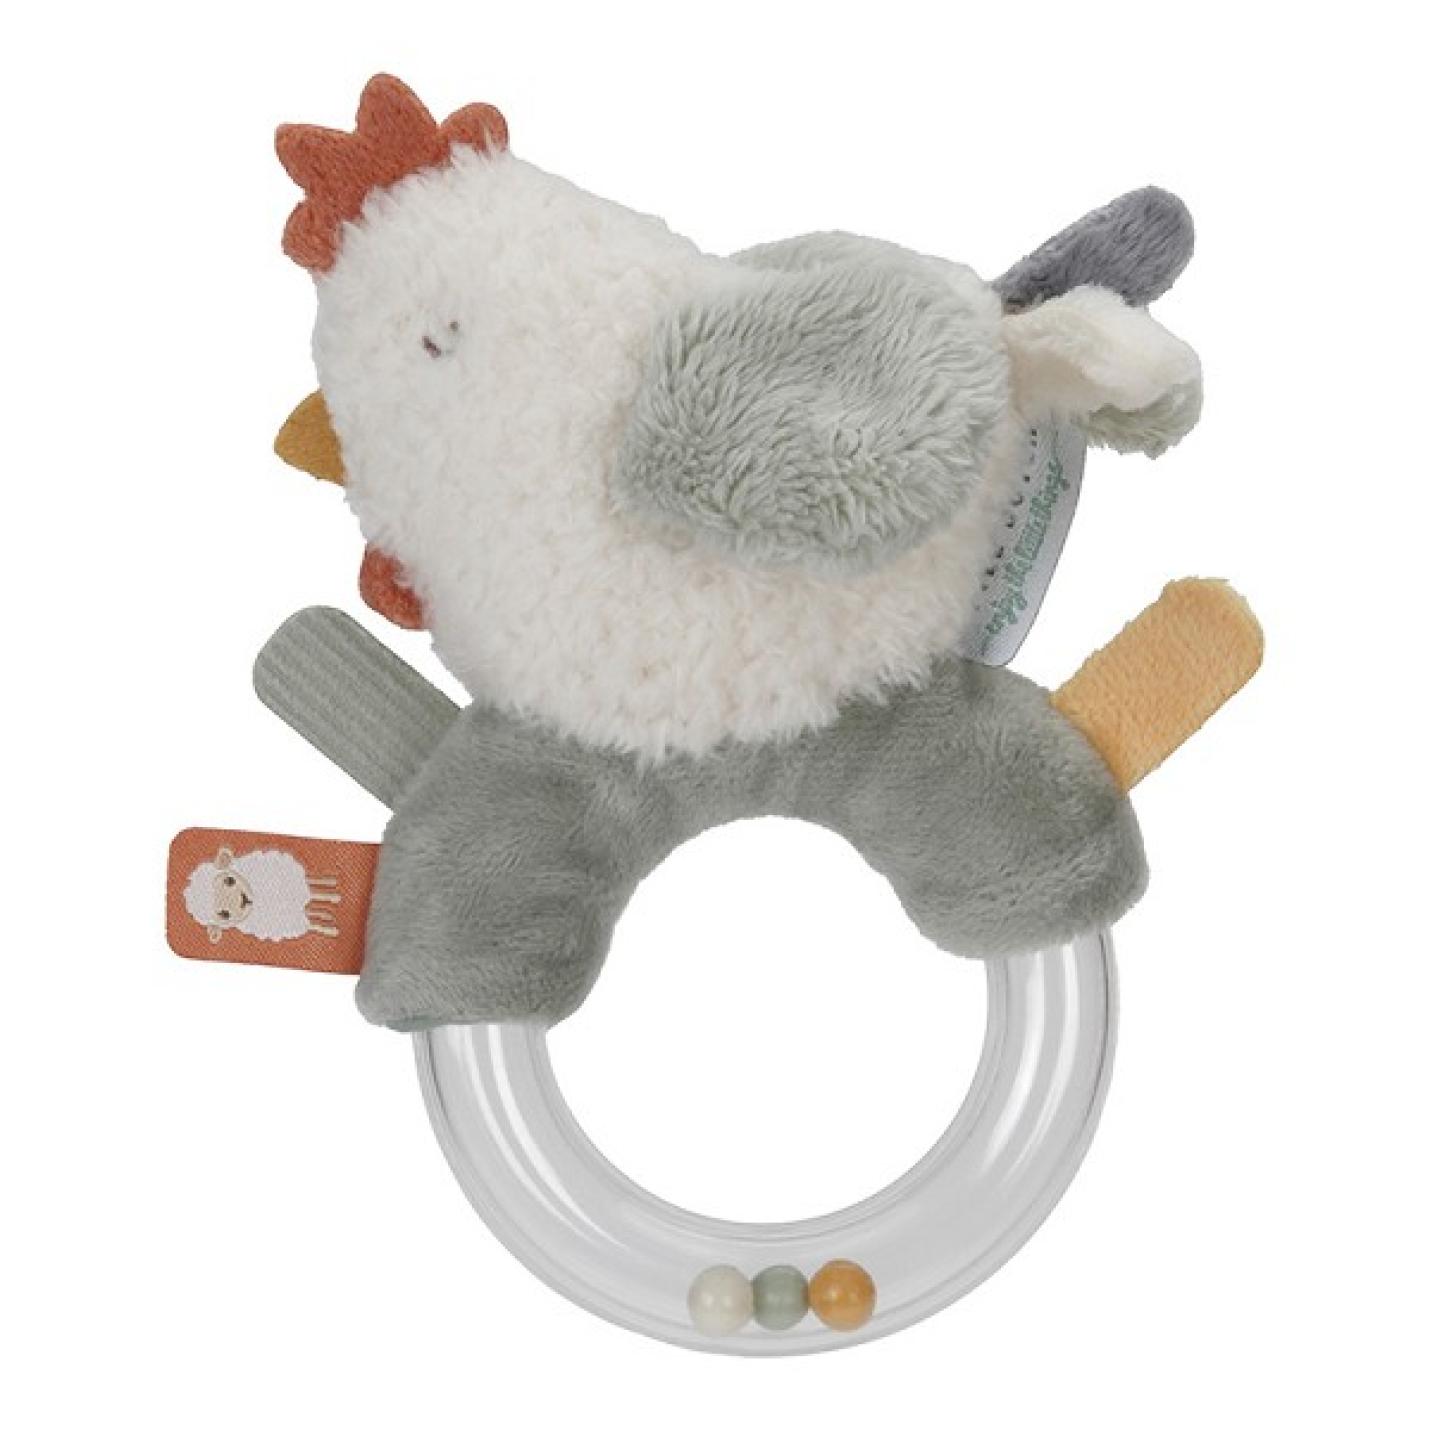 Ringrammelaar kip met plastic ring met 3 kralen erin en een kip van wit grijs en rood zit aan de ring